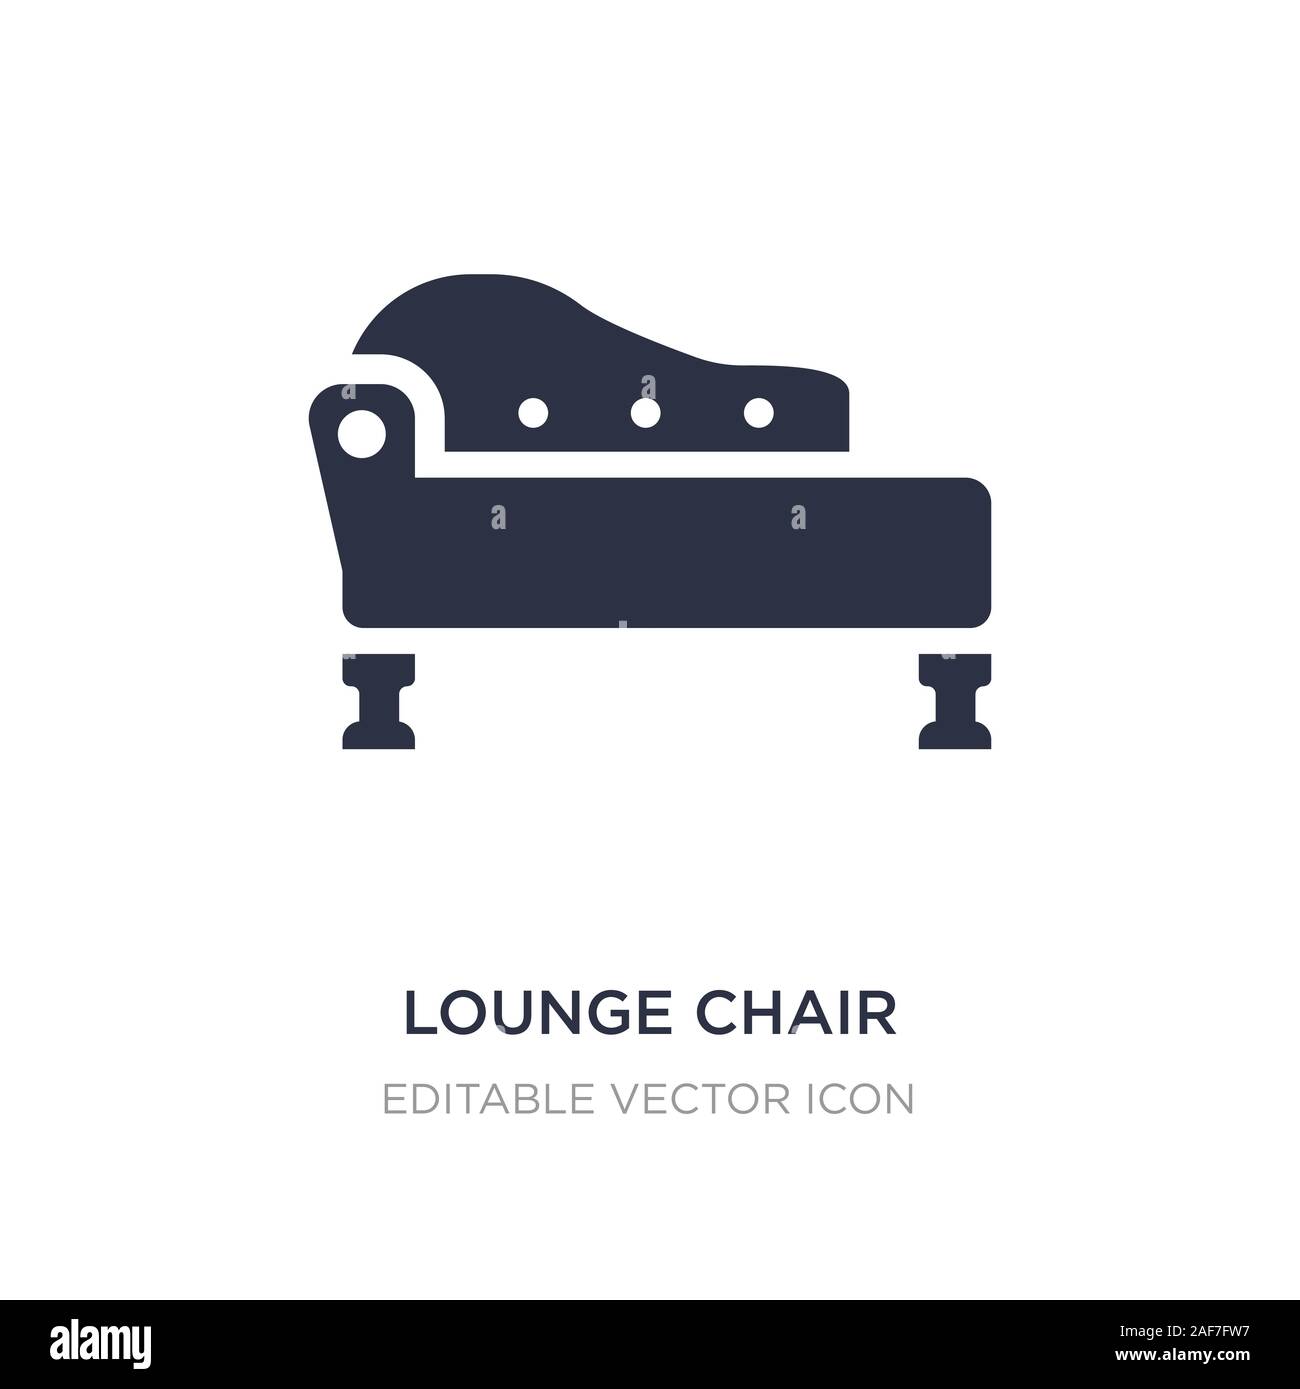 Lounge chair Symbol auf weißem Hintergrund. Einfaches element Abbildung von Möbel und Haushalt Konzept. Lounge chair Symbol Design. Stock Vektor